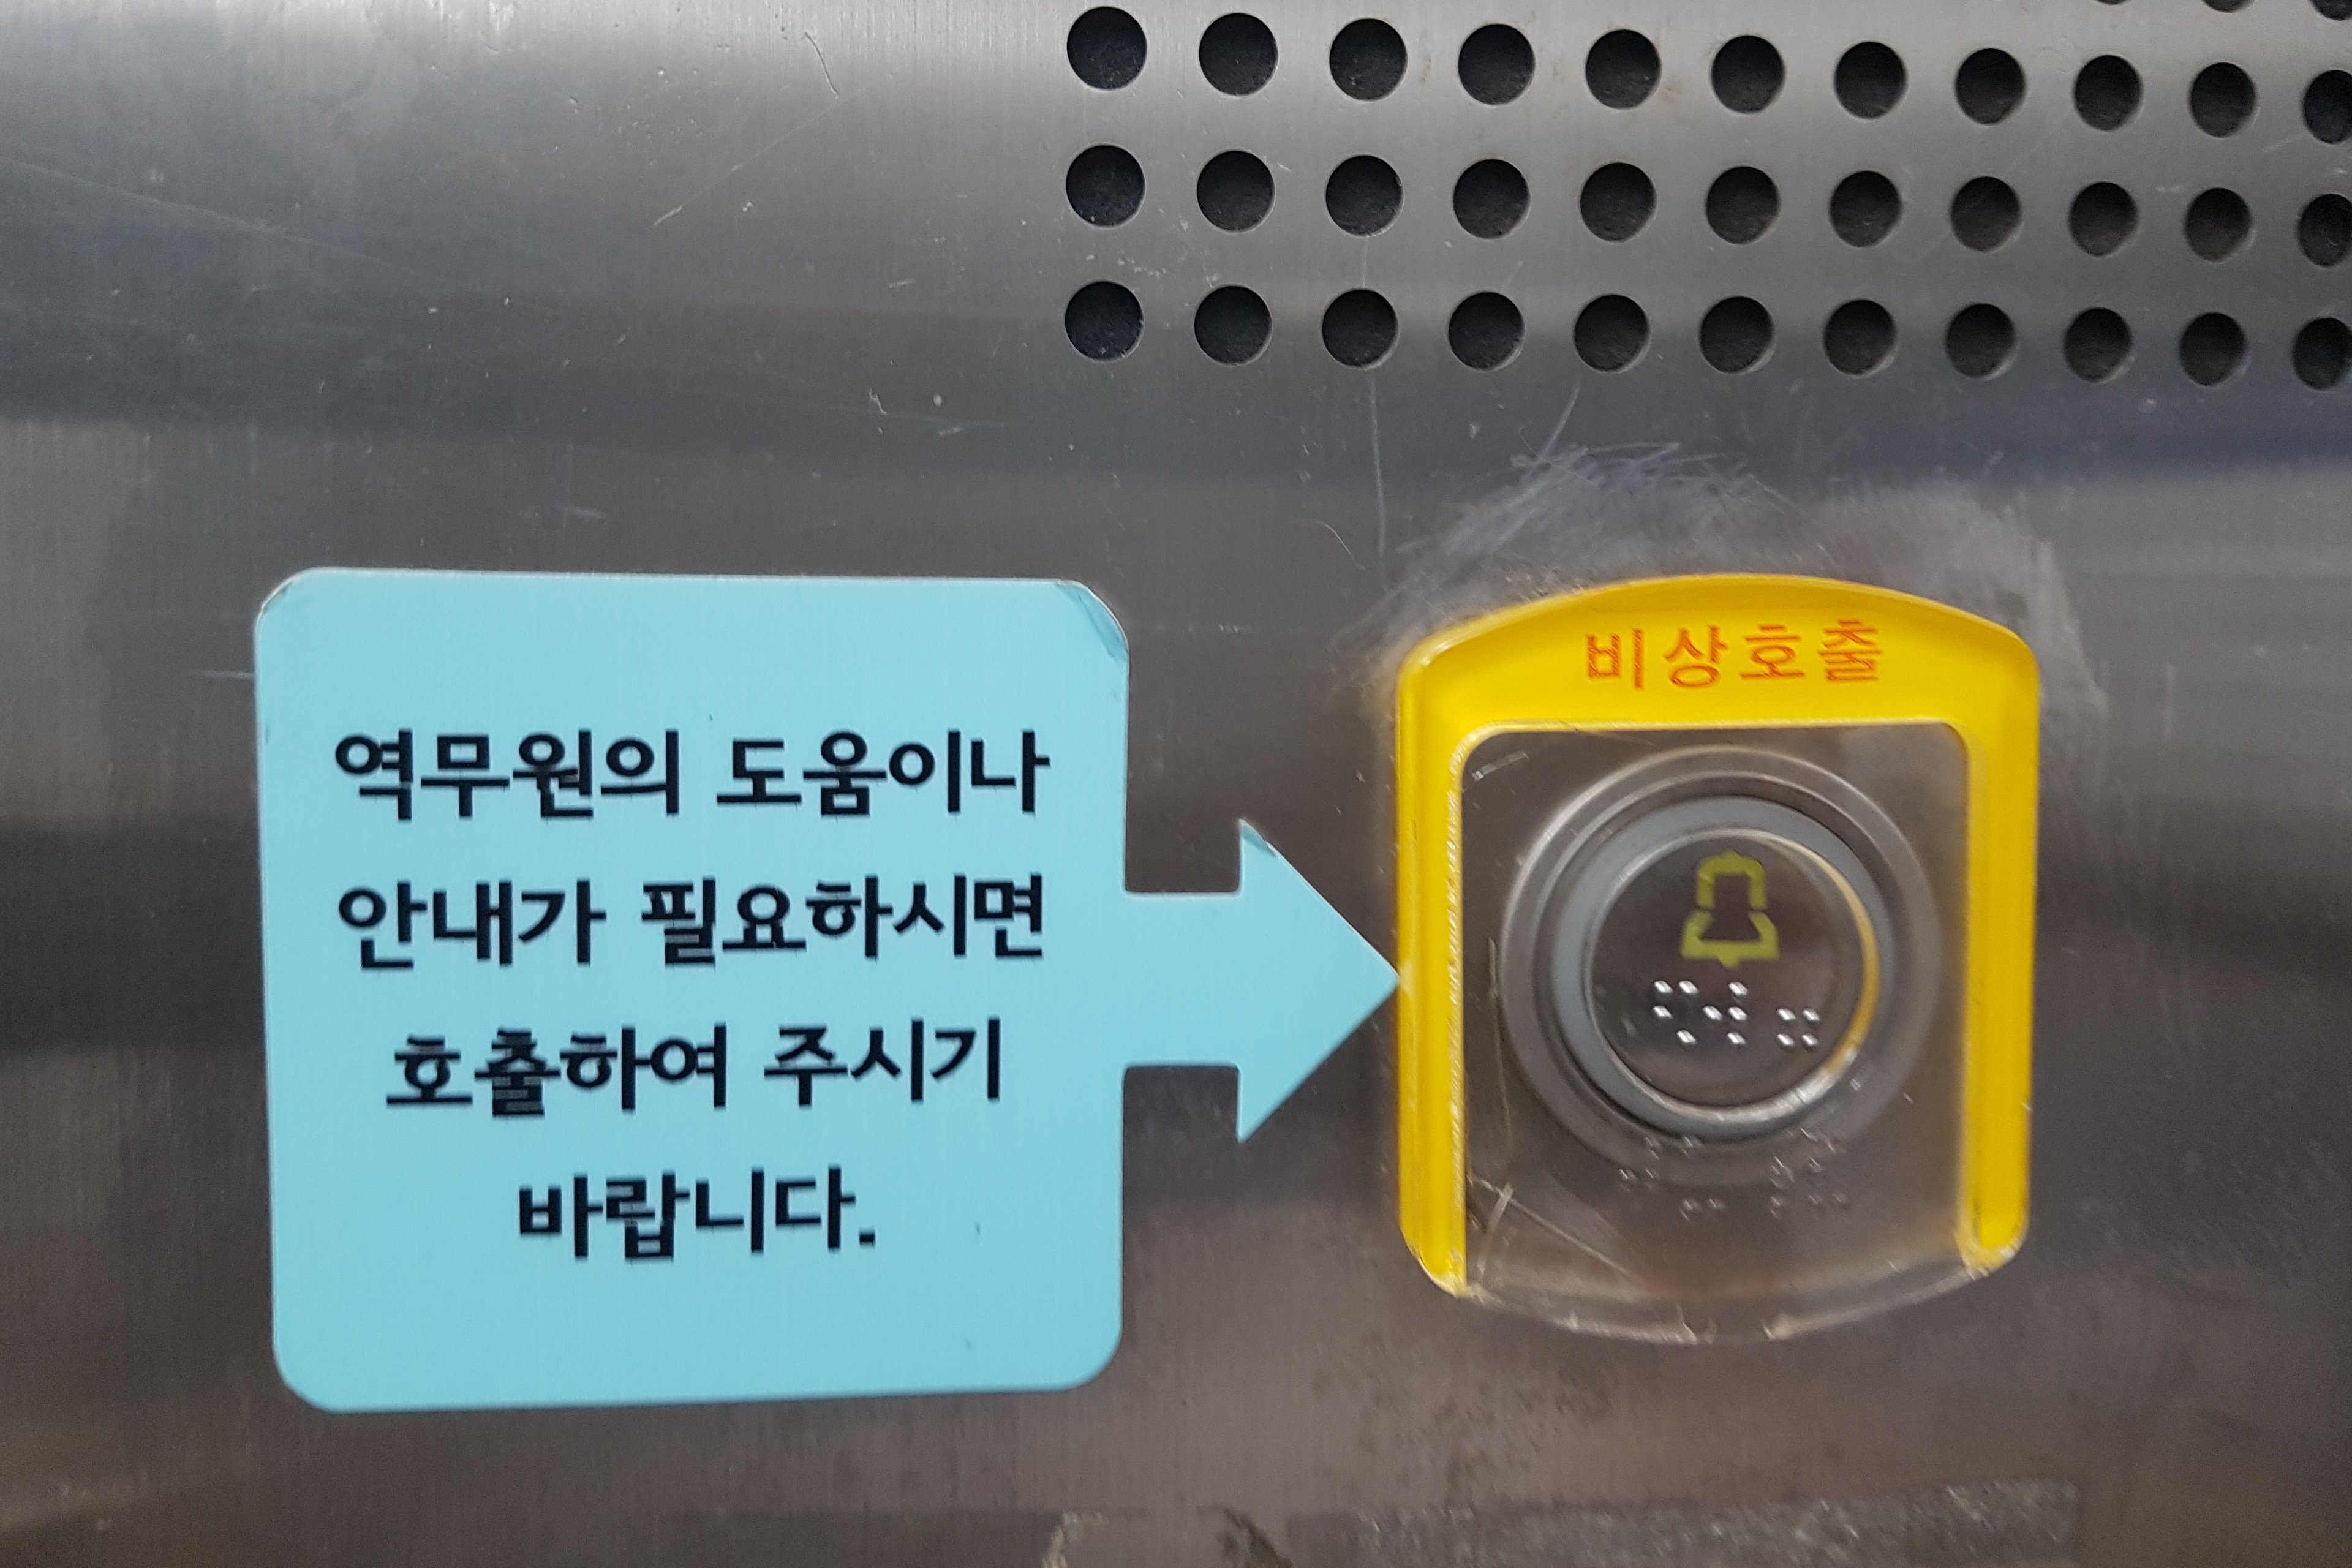 Elevator0 : An emergency bell in elevator
